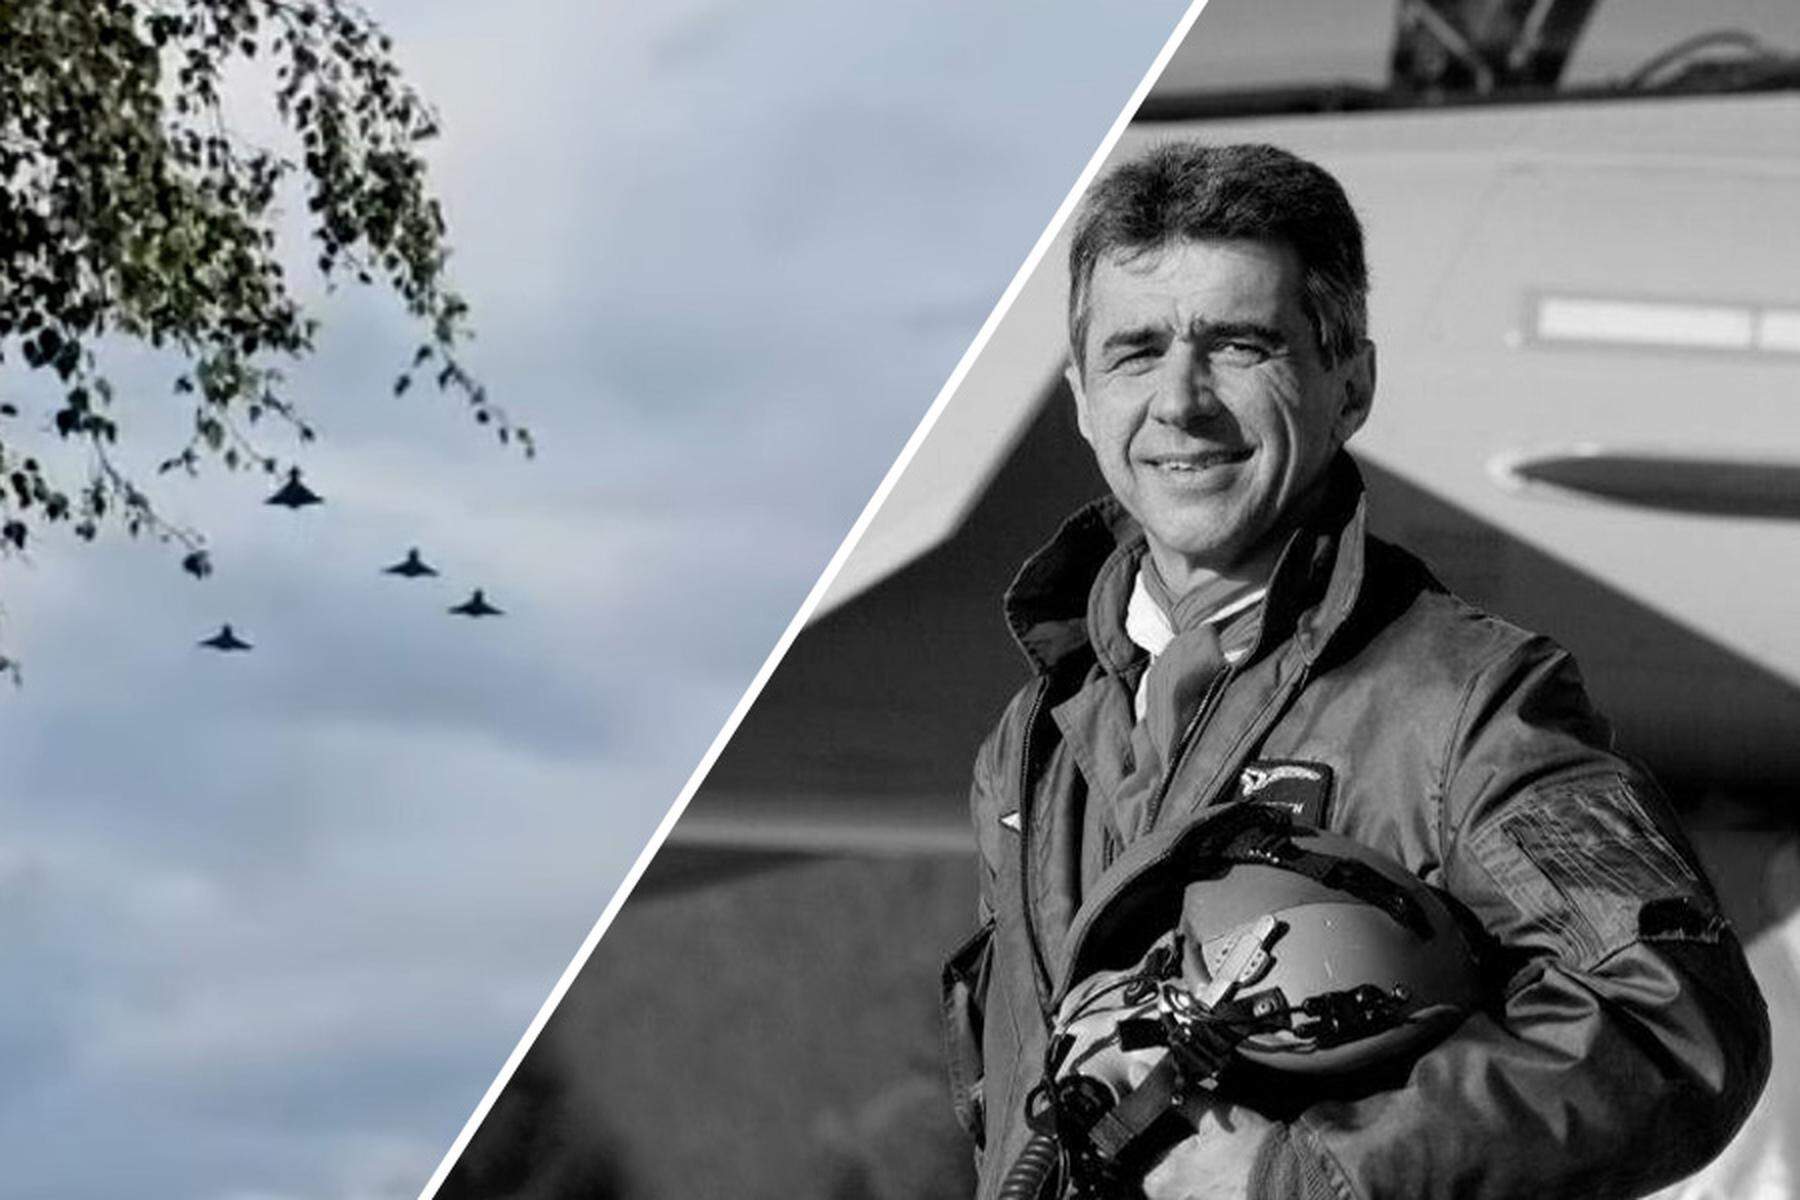 Vier Eurofighter flogen zum Abschied über das Grab von Doro Kowatsch